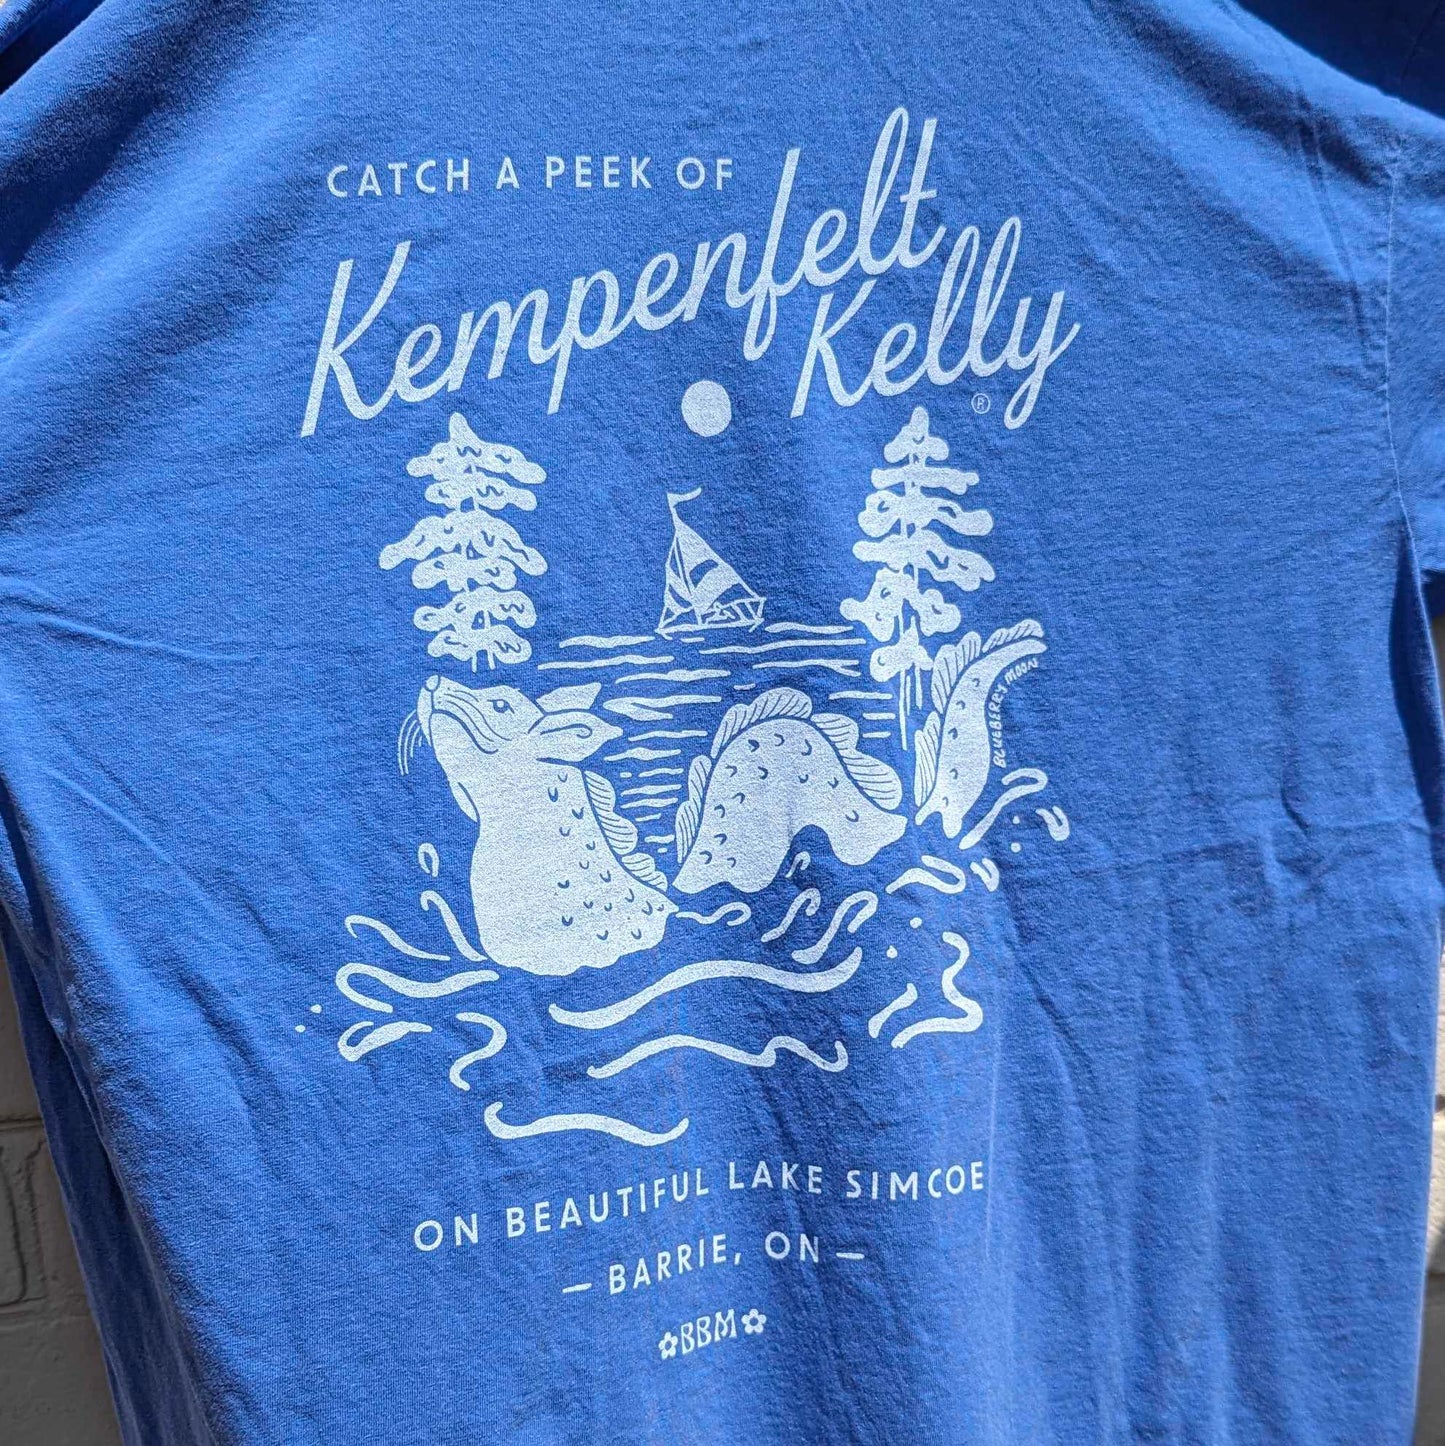 Kempenfelt Kelly T-Shirt